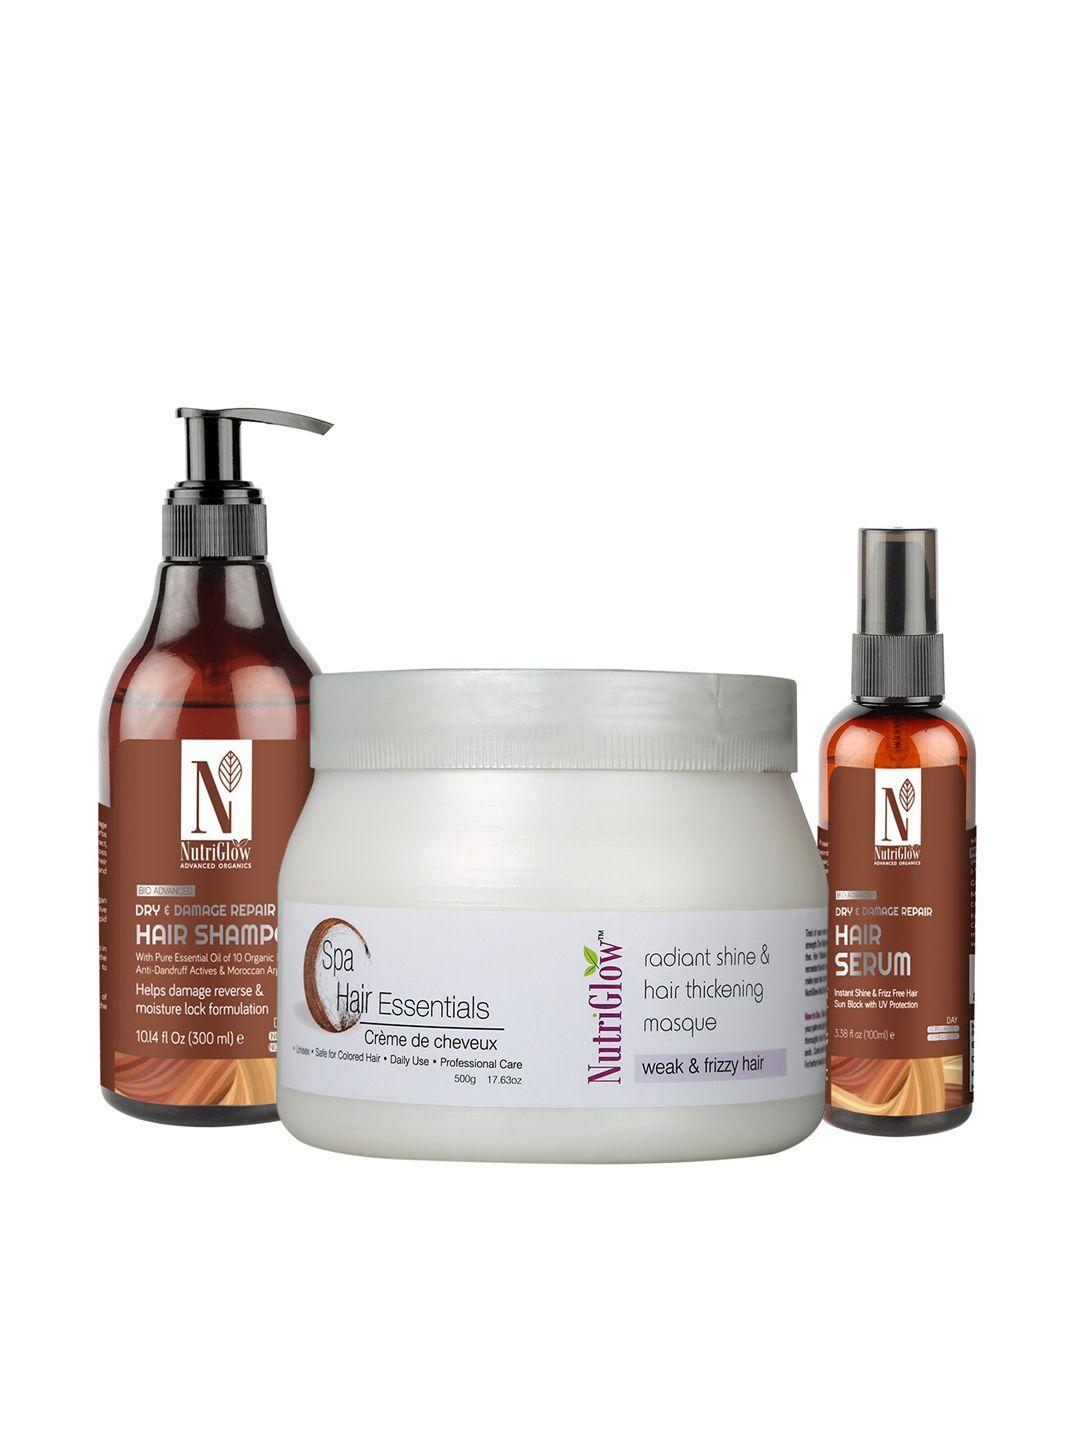 nutriglow advanced organics hair spa masque 500 g - hair serum 100 ml - shampoo 300 ml